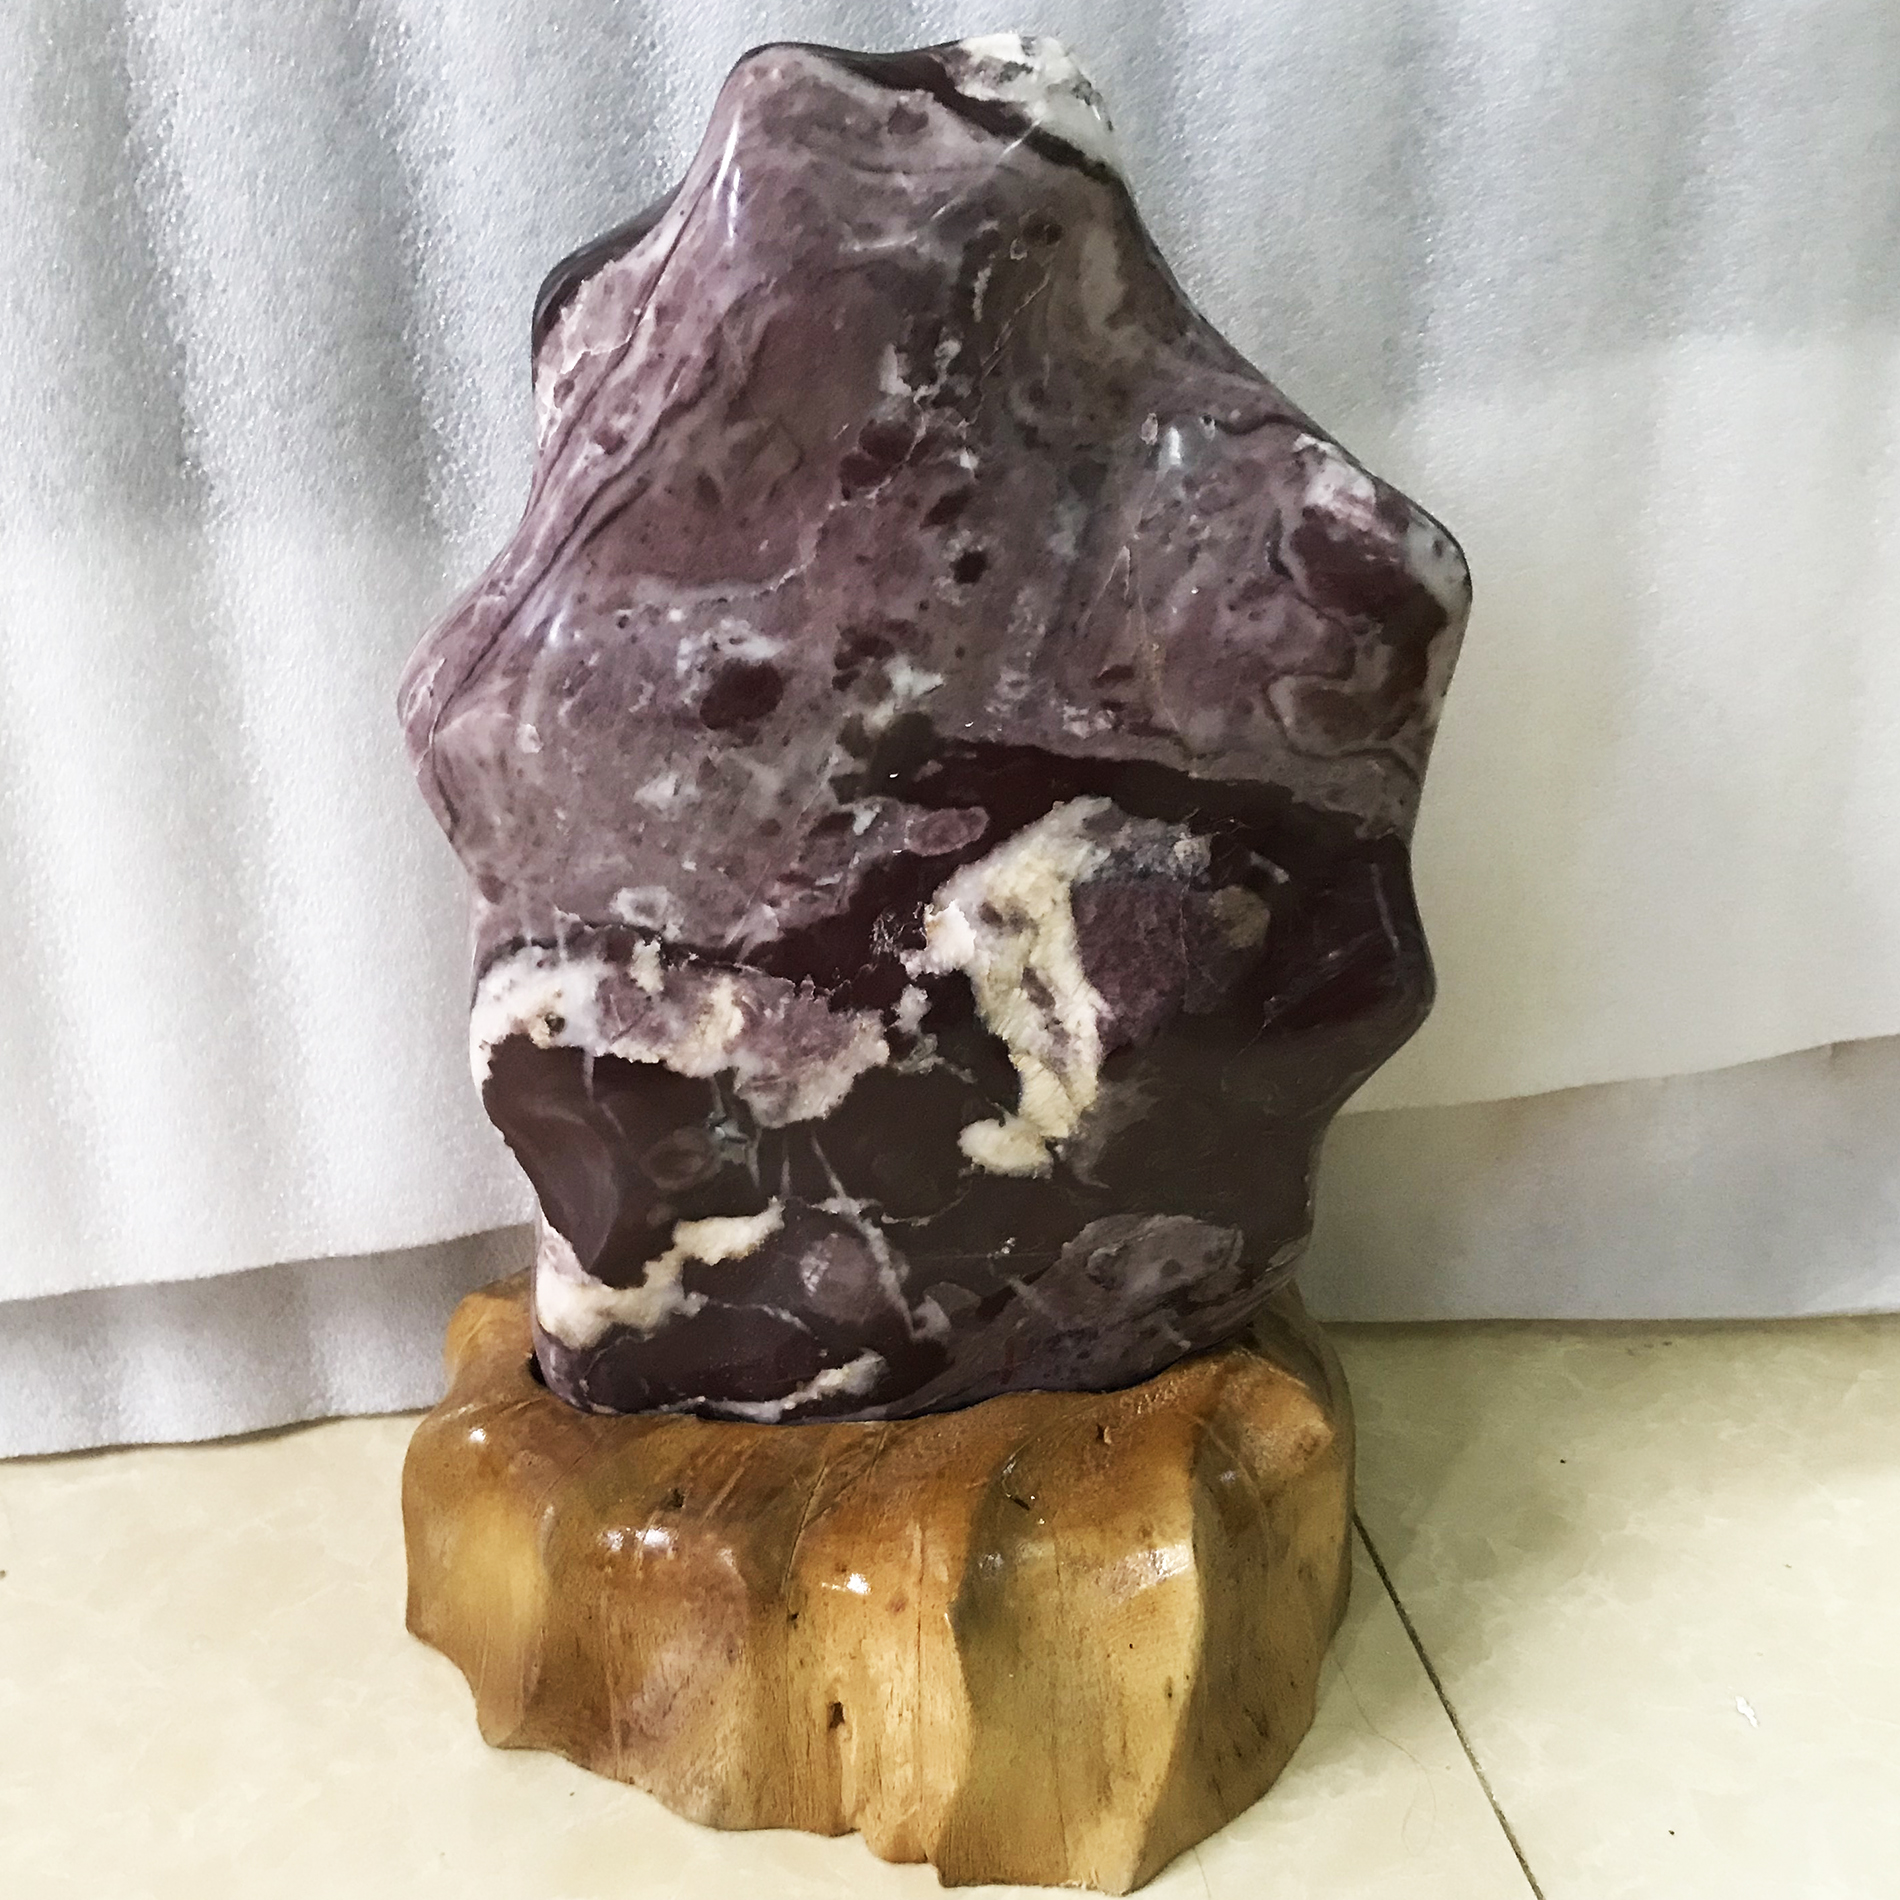 Cây đá phong thủy tự nhiên màu đỏ hồng cao 39 cm, nặng 10 kg cho người mệnh Thổ và Hỏa  phongthuymenhtho